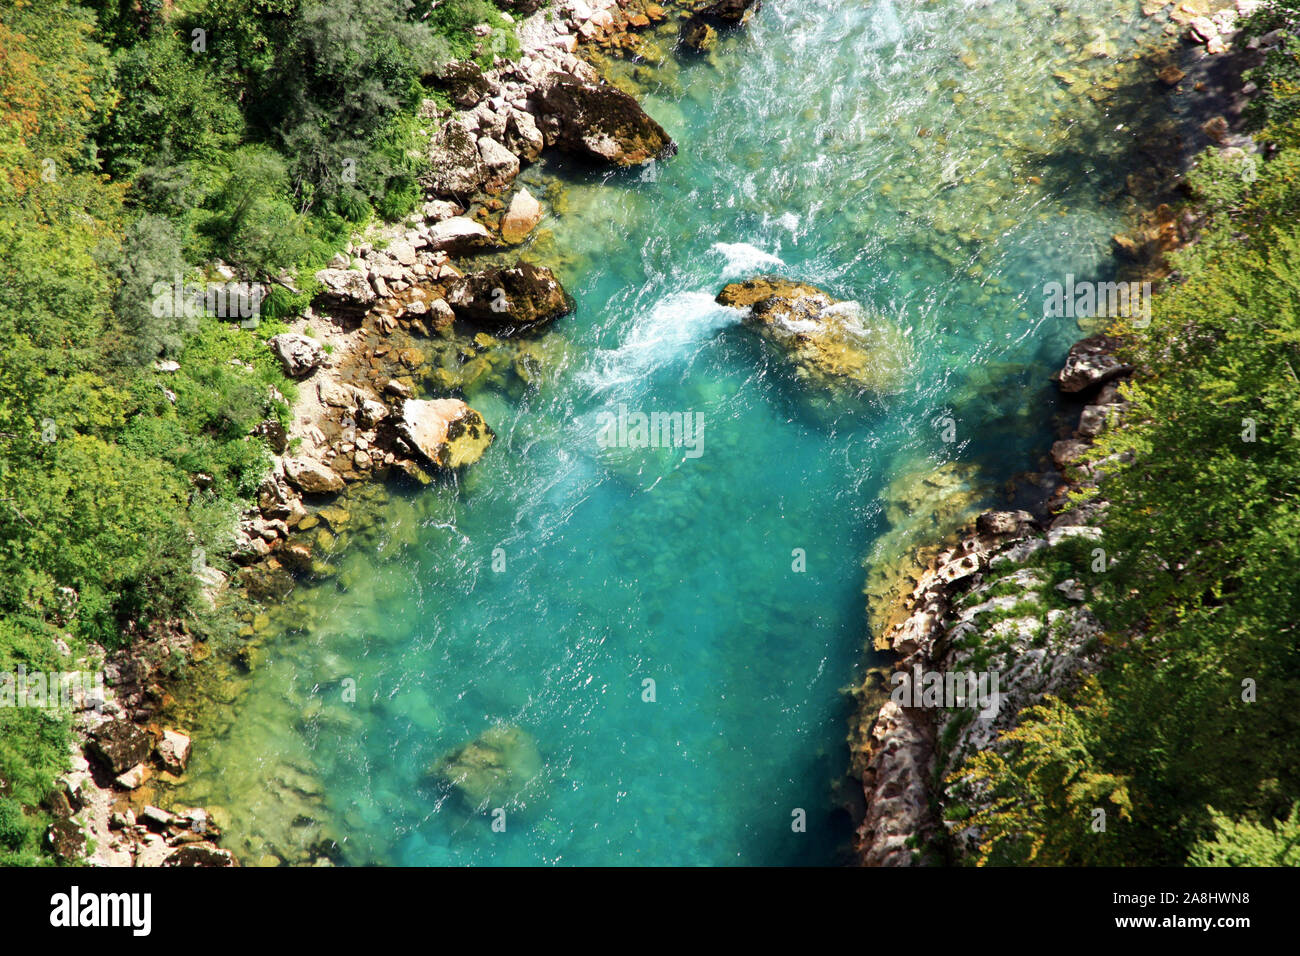 Mountain River im Sommer. Schöne saubere klare blaue Wasser. Montenegro Natur. Stockfoto